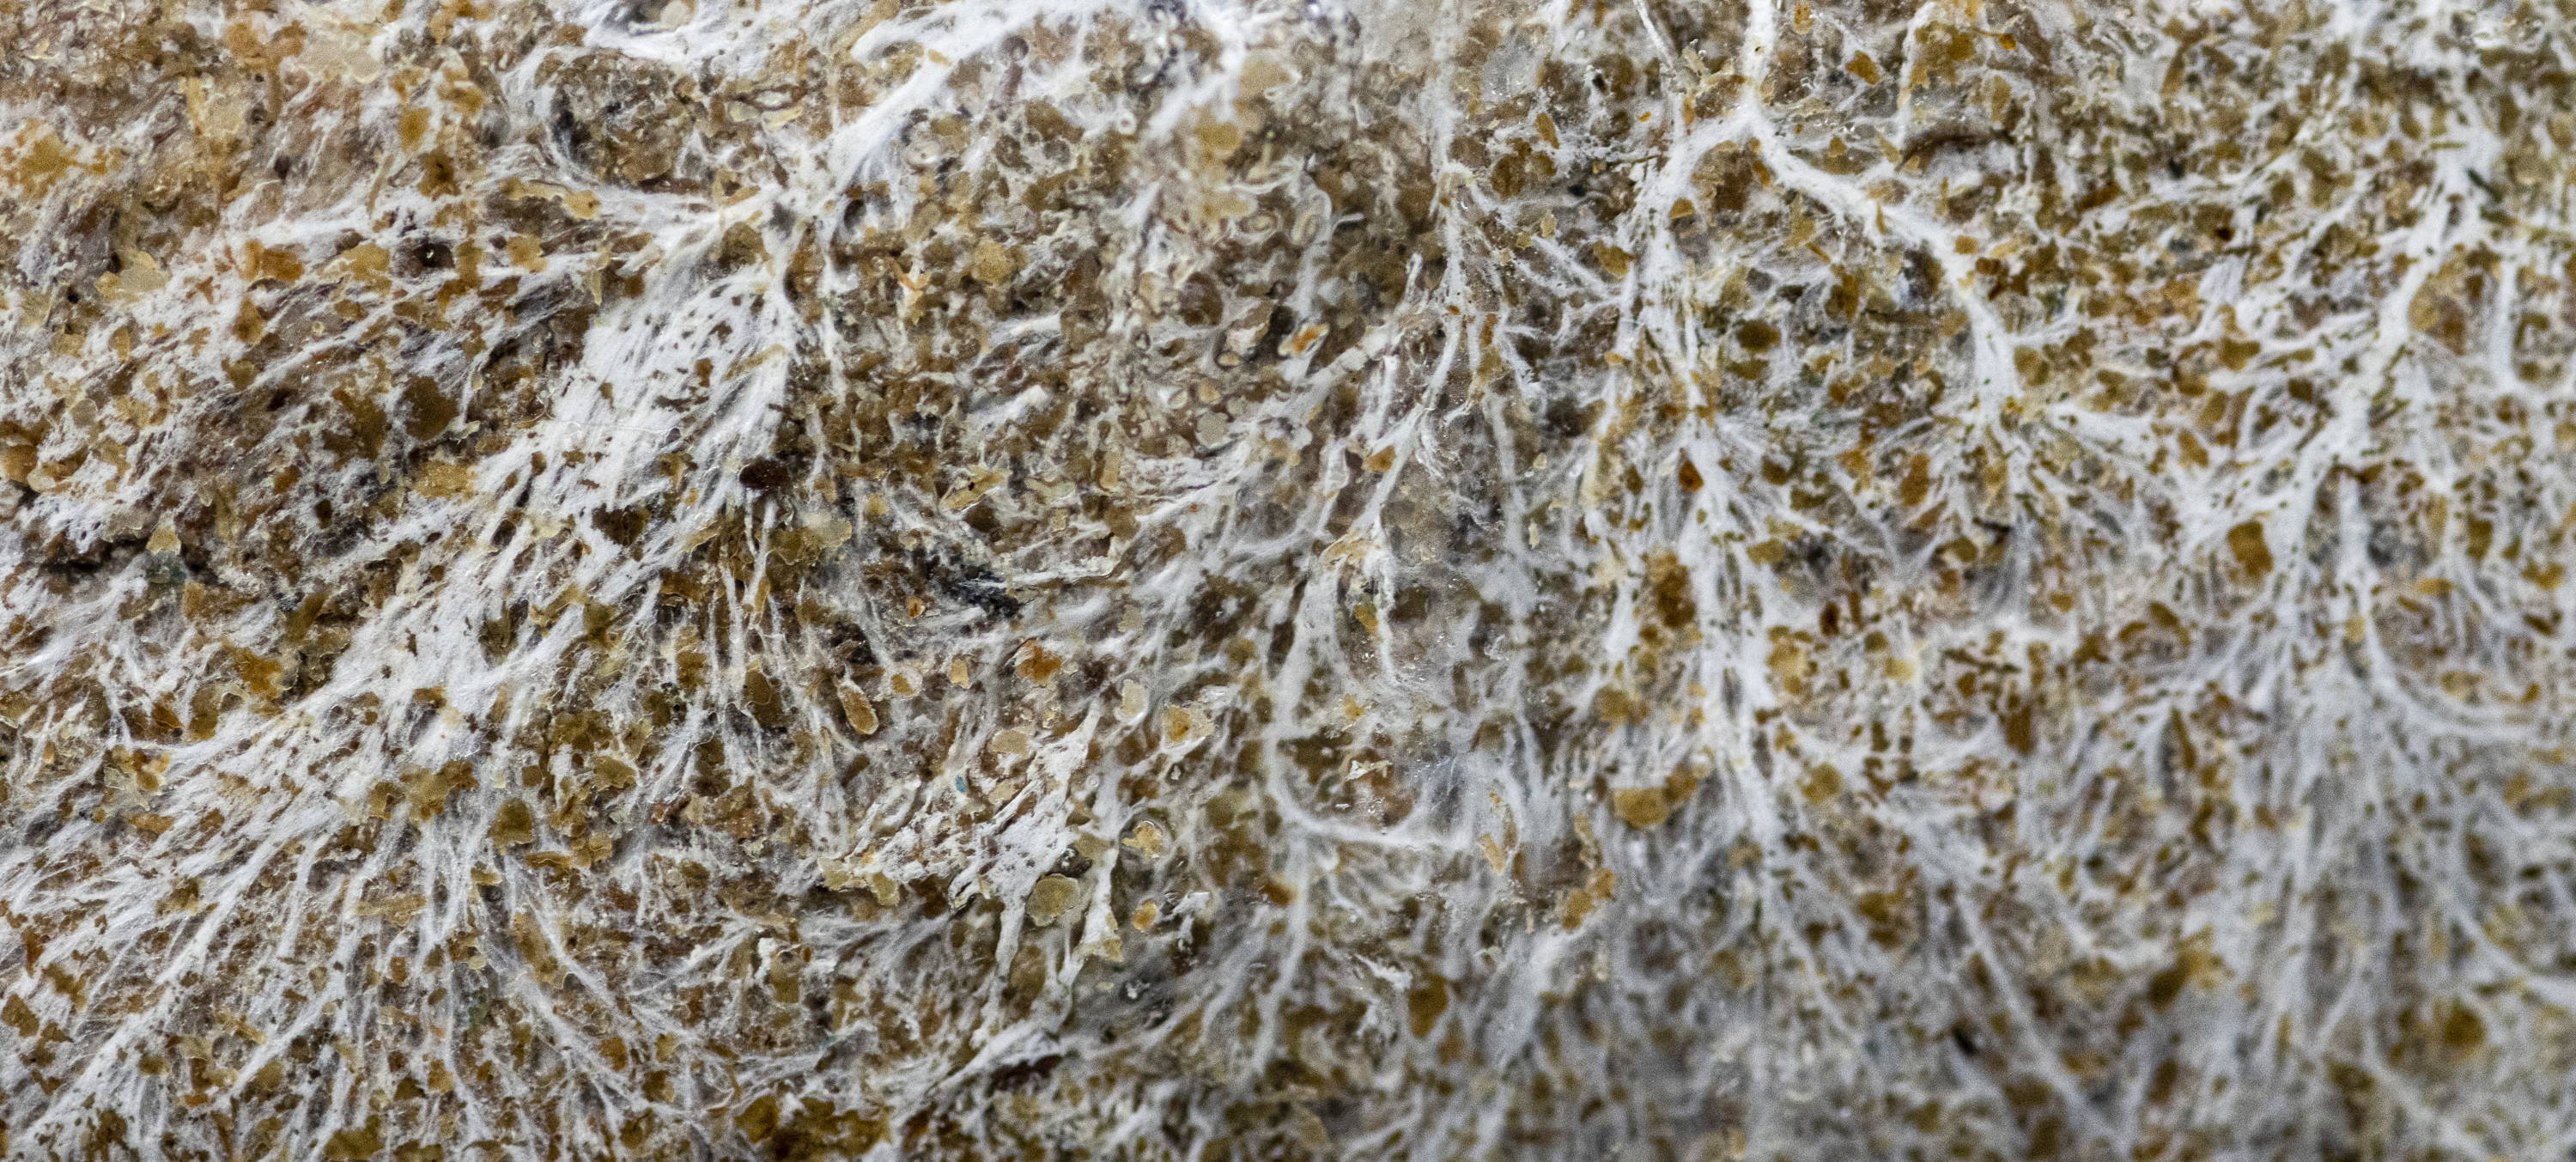 mycelium on sawdust